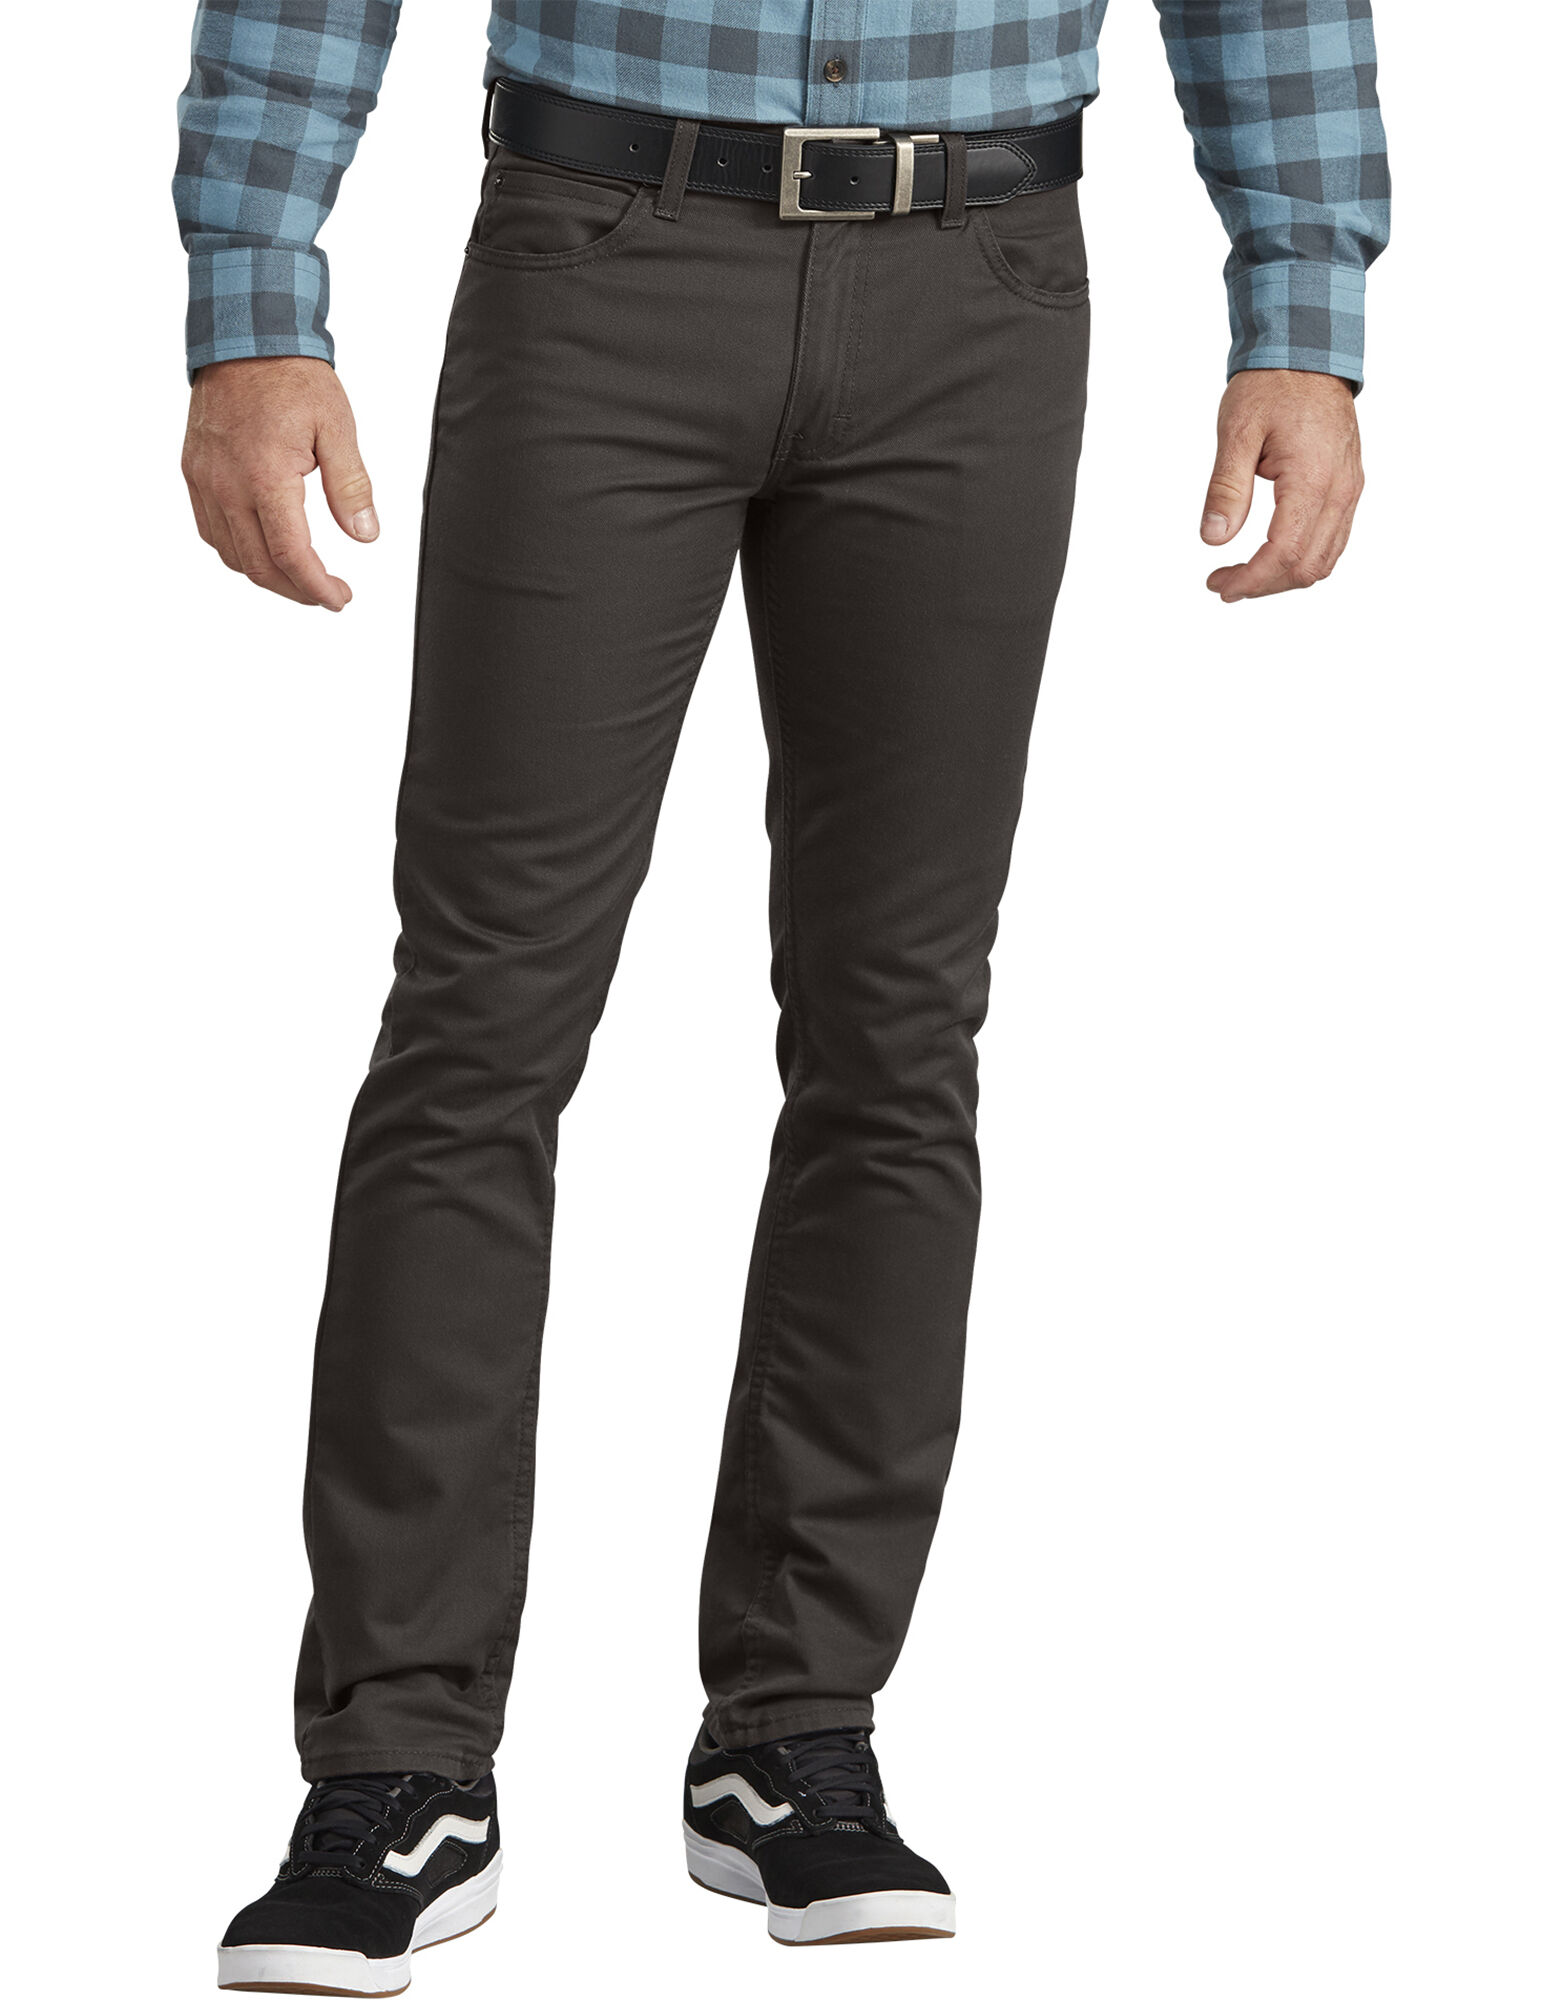 branded mens jeans online shopping